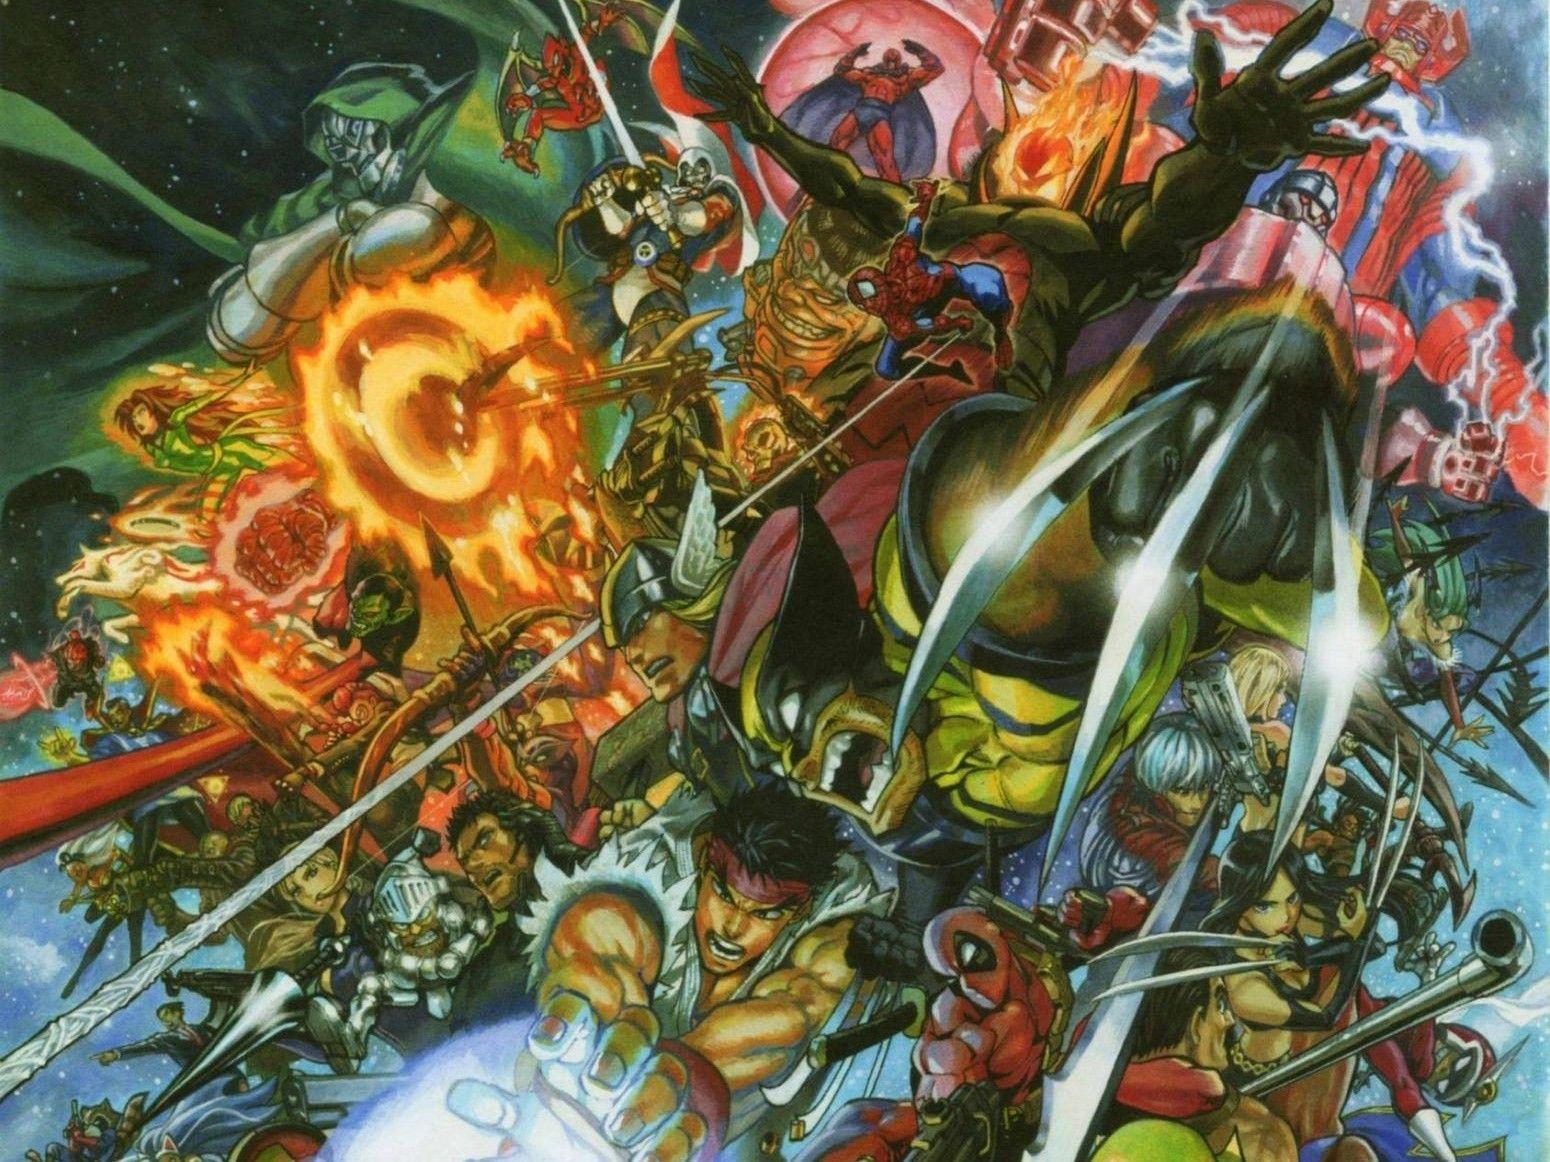 Marvel vs capcom 3 storm (comics character) wallpaper. AllWallpaper